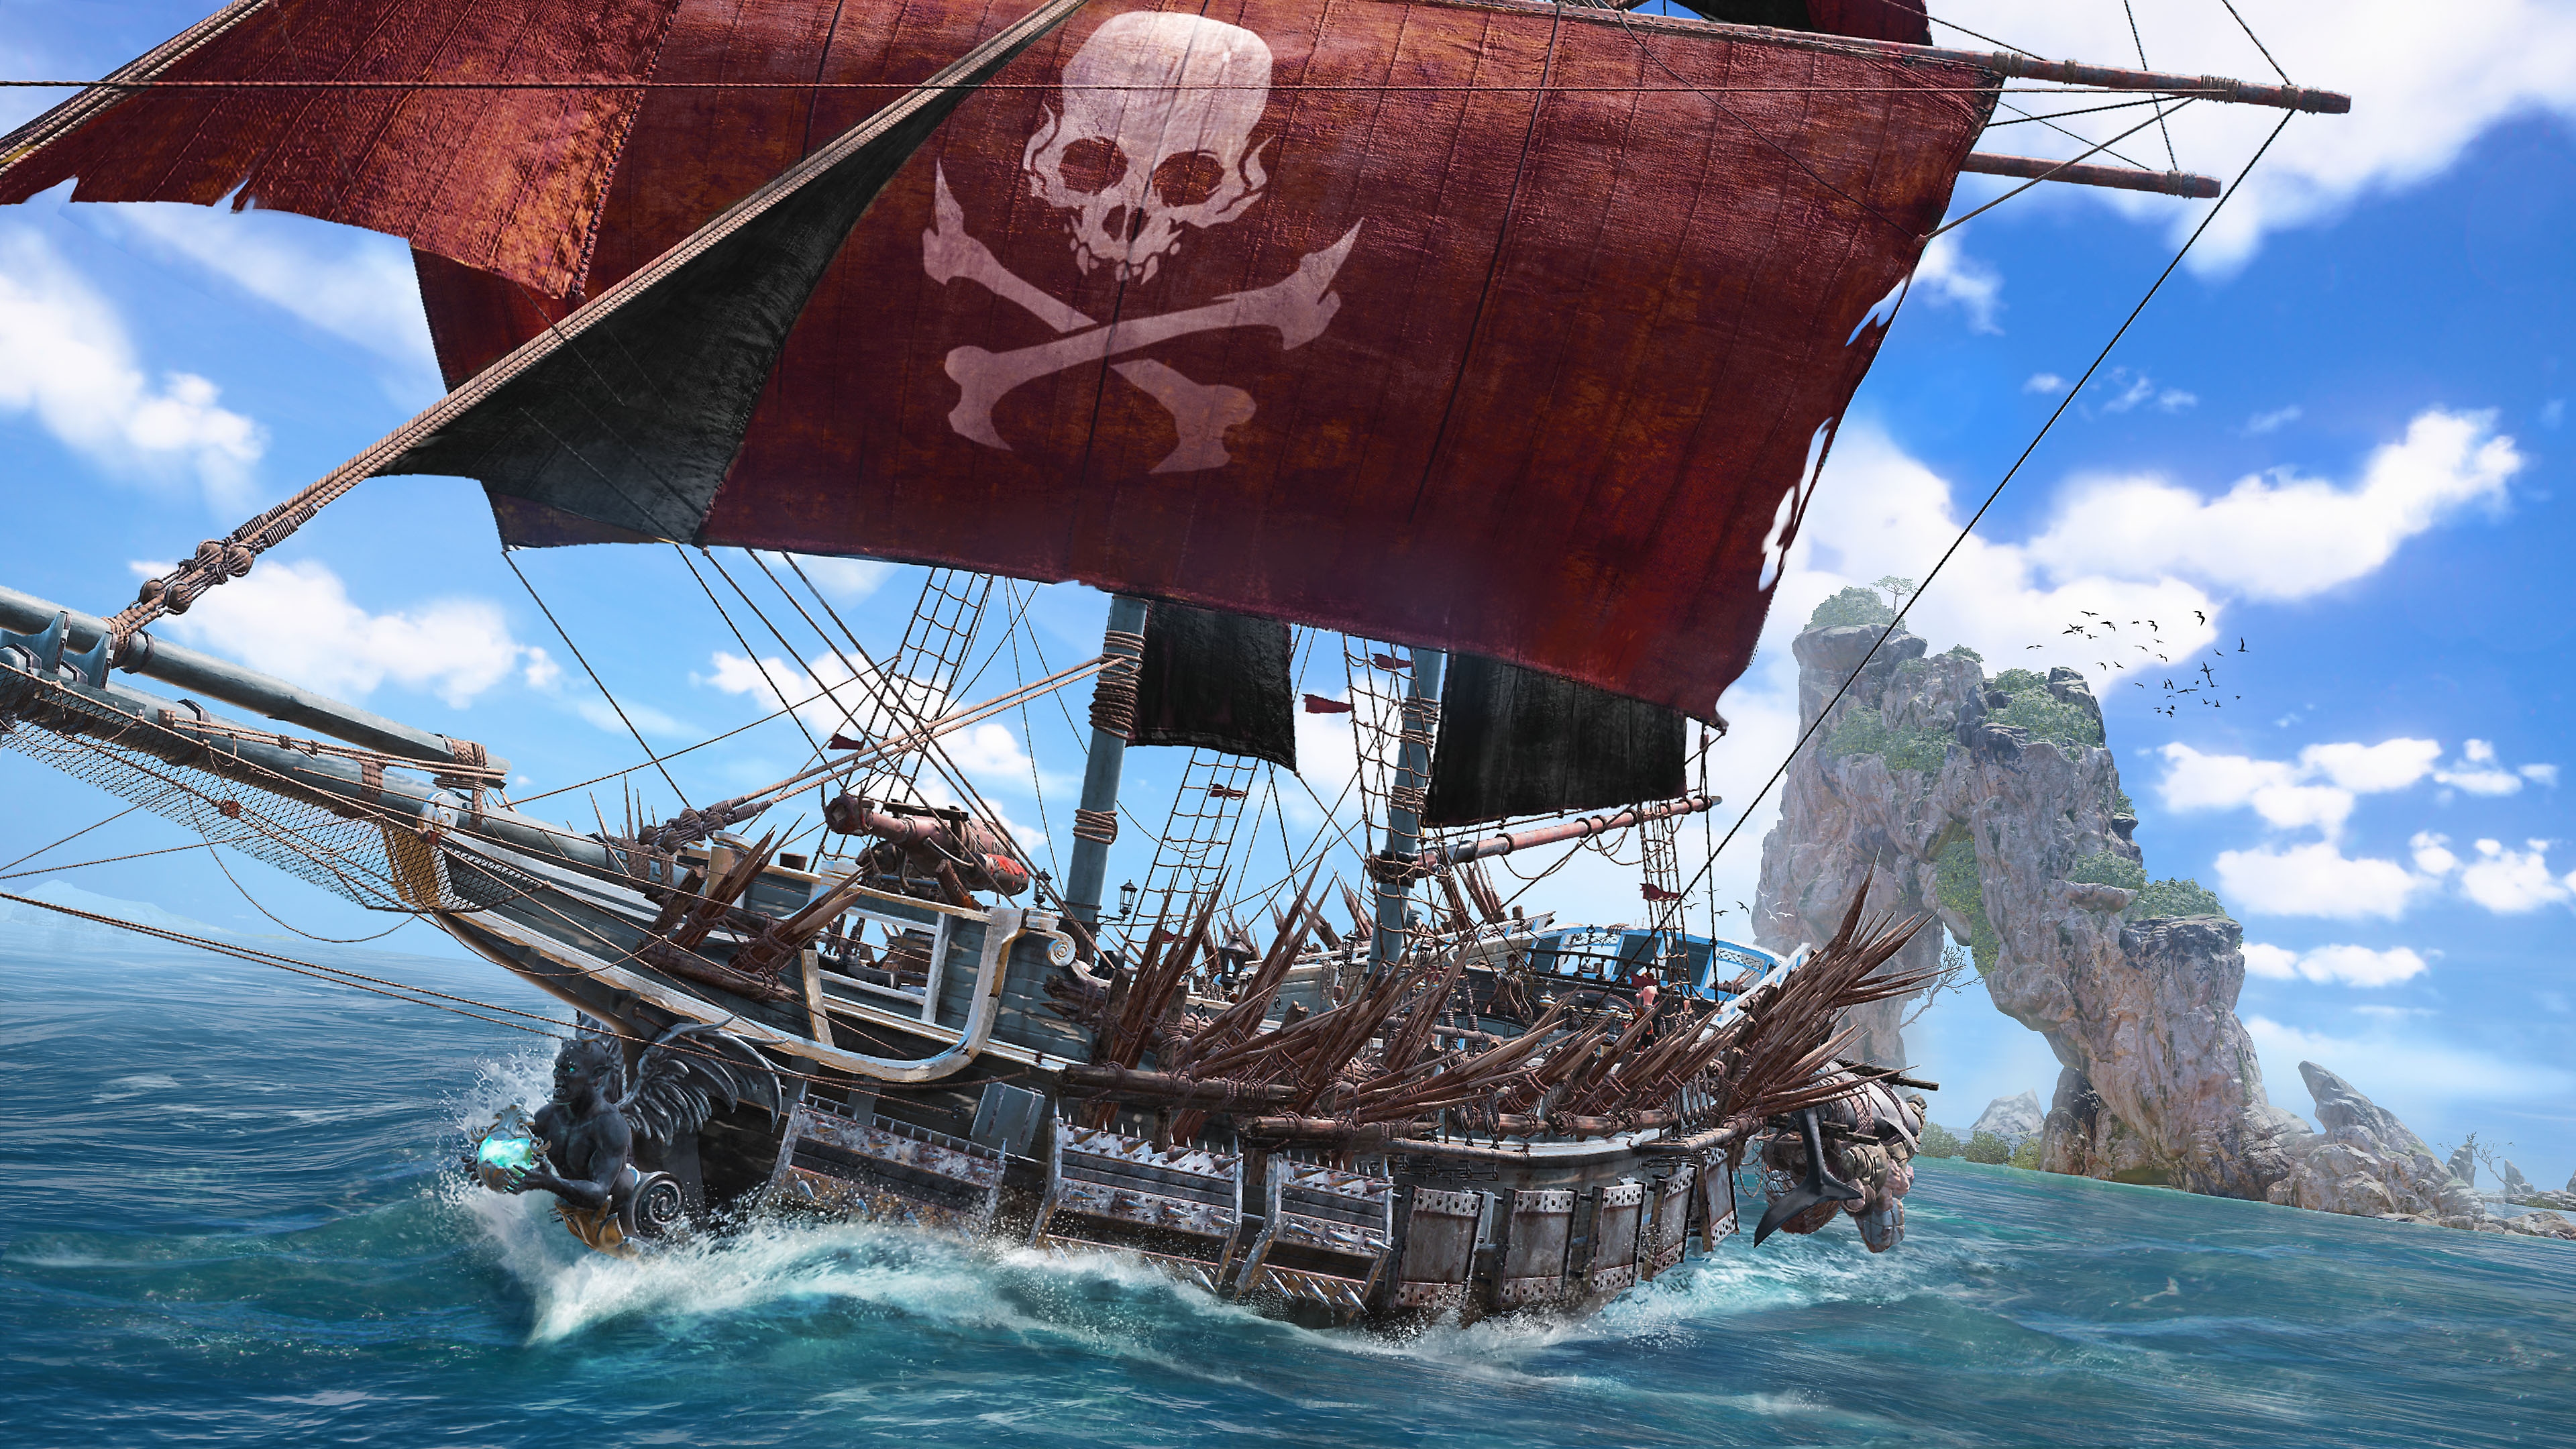 Captura de pantalla de Skull & Bones que muestra un barco pirata con un cráneo y huesos en cruz sobre una gran vela colorada